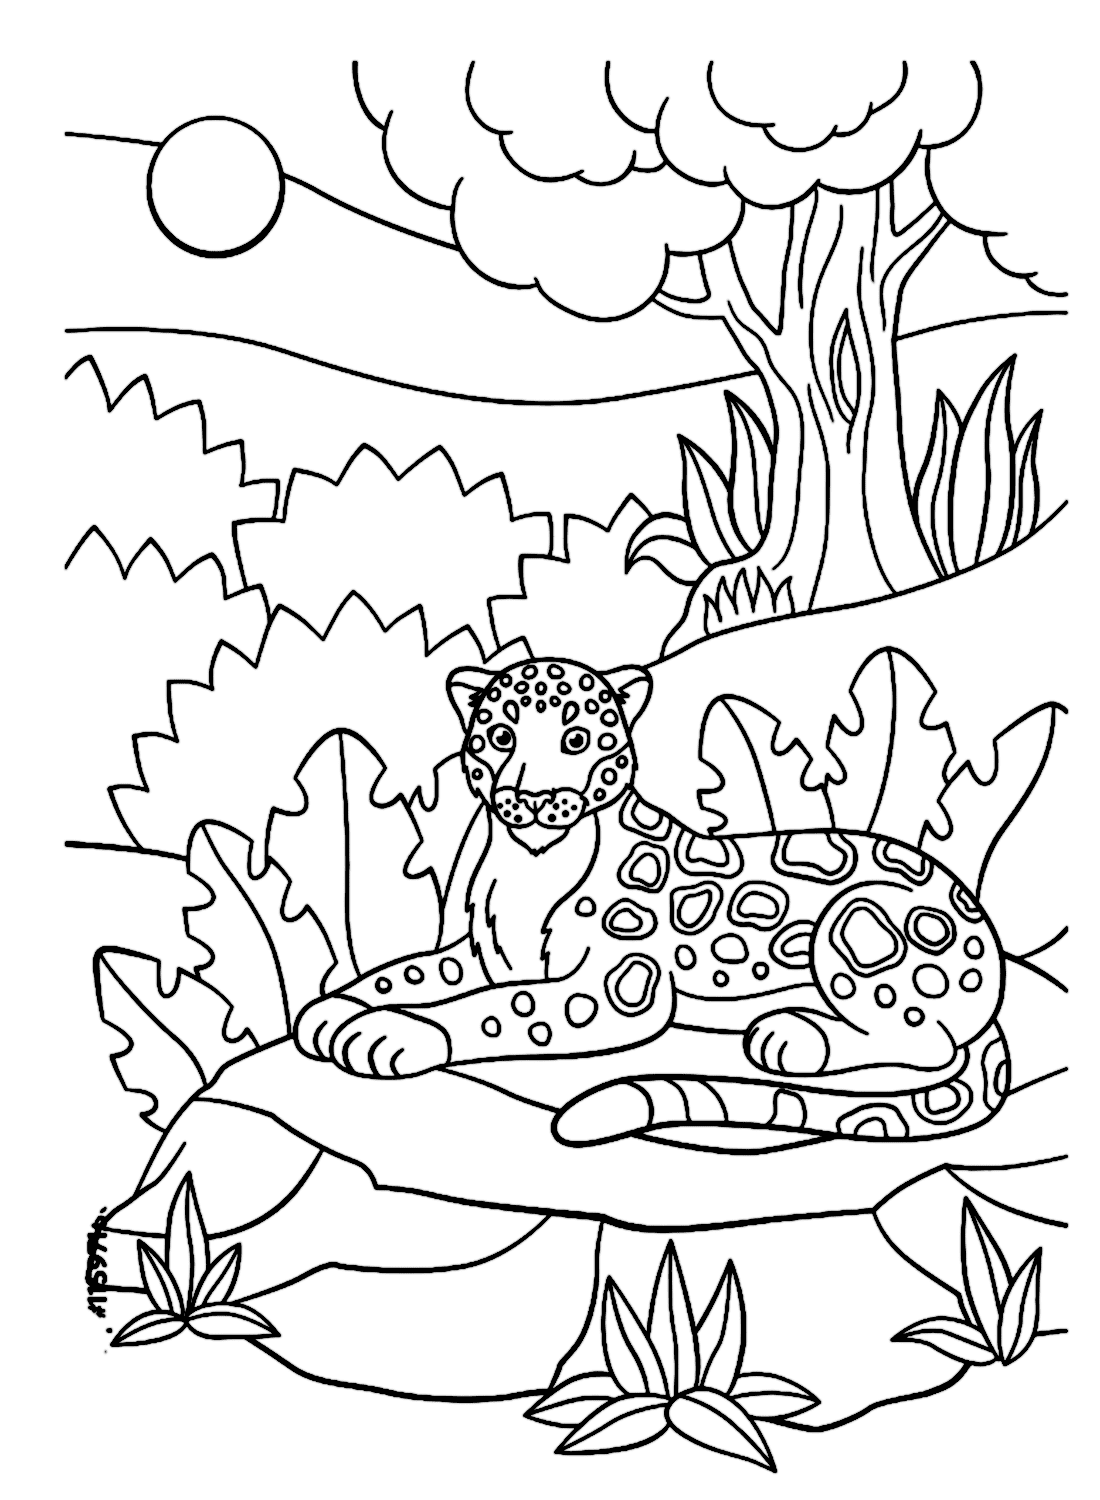 Ягуар отдыхает в джунглях из фильма "Ягуар"